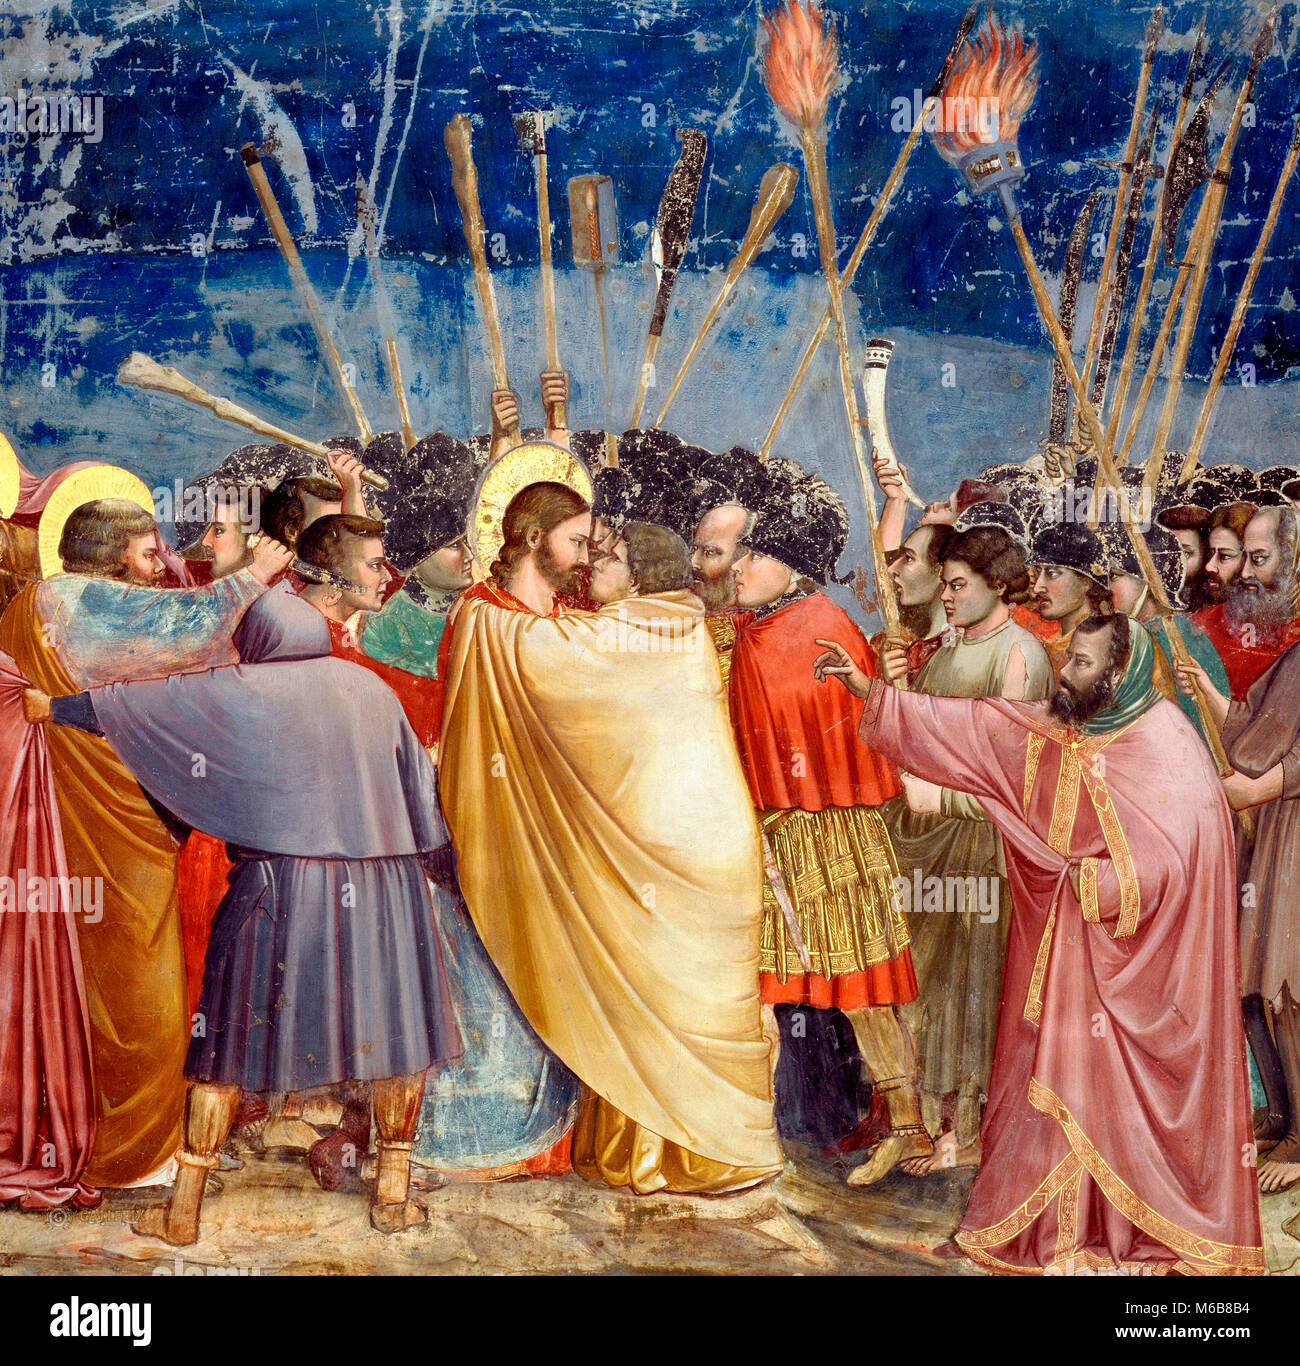 Baiser de Judas - le disciple sur la gauche, qui blessures un soldat avec son couteau, est Saint Pierre. Giotto di Bondone, vers 1305 Banque D'Images